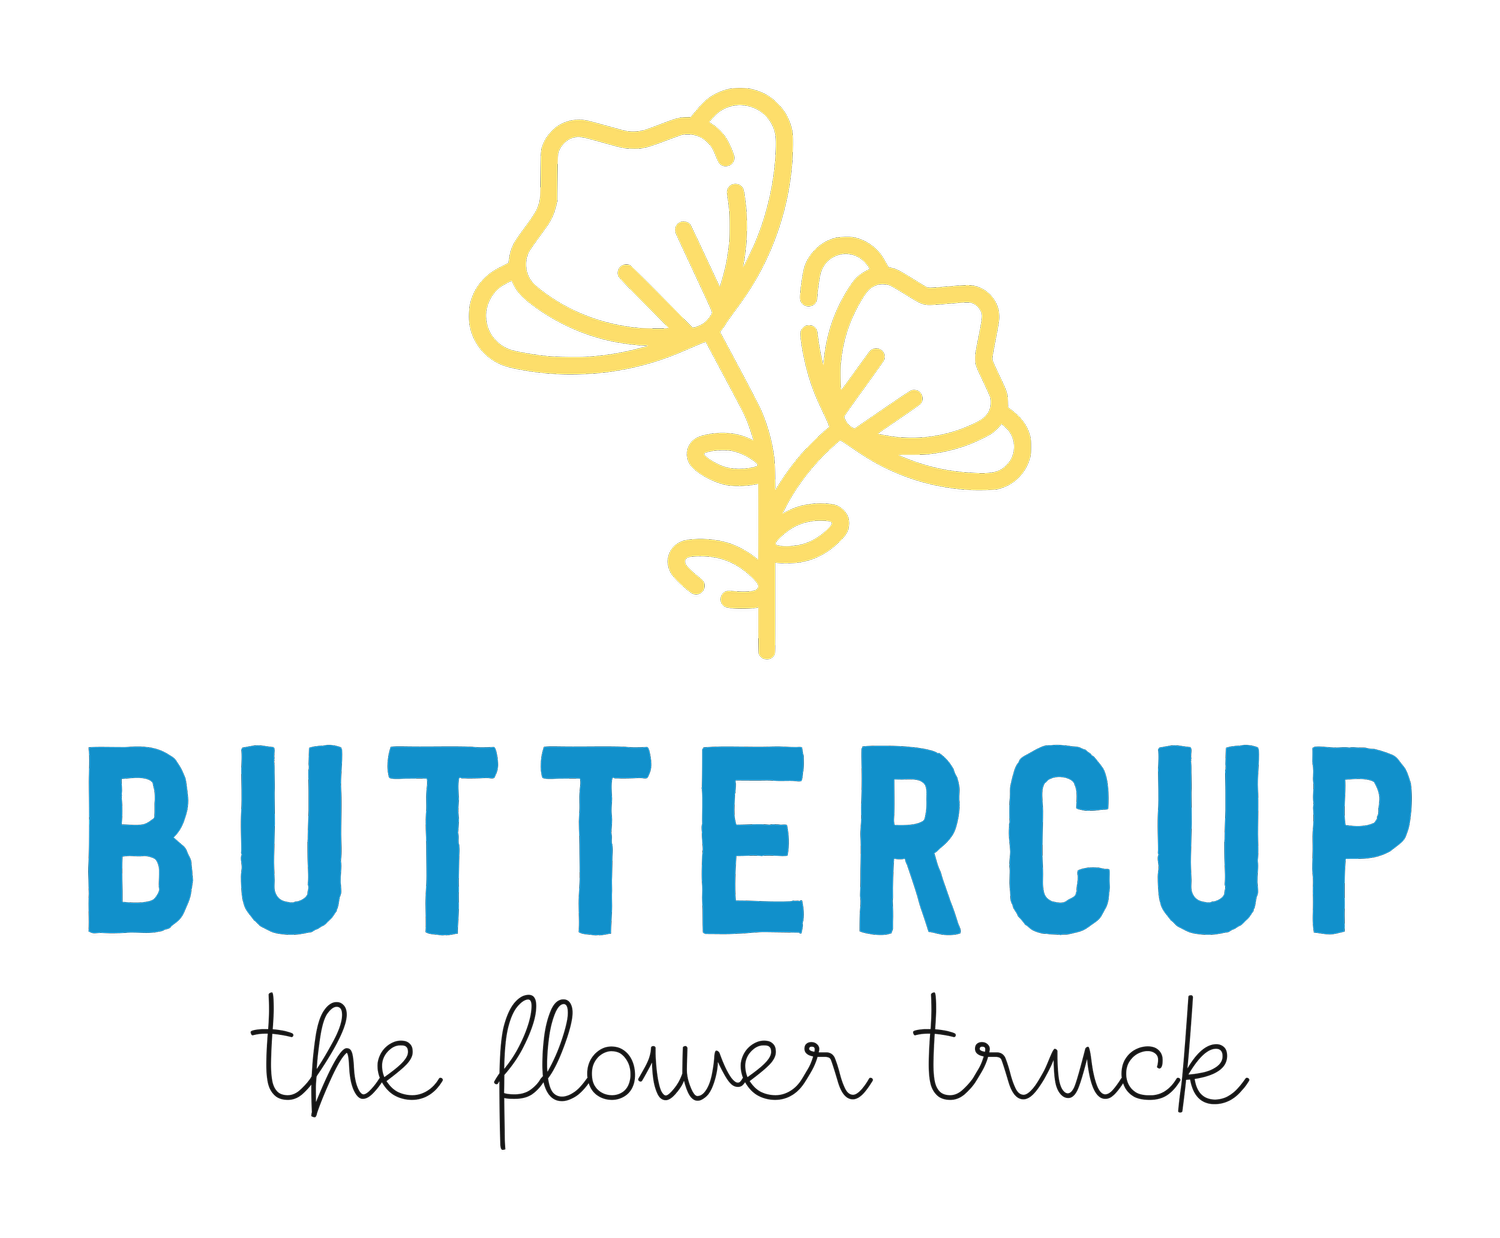 Buttercup The Flower Truck